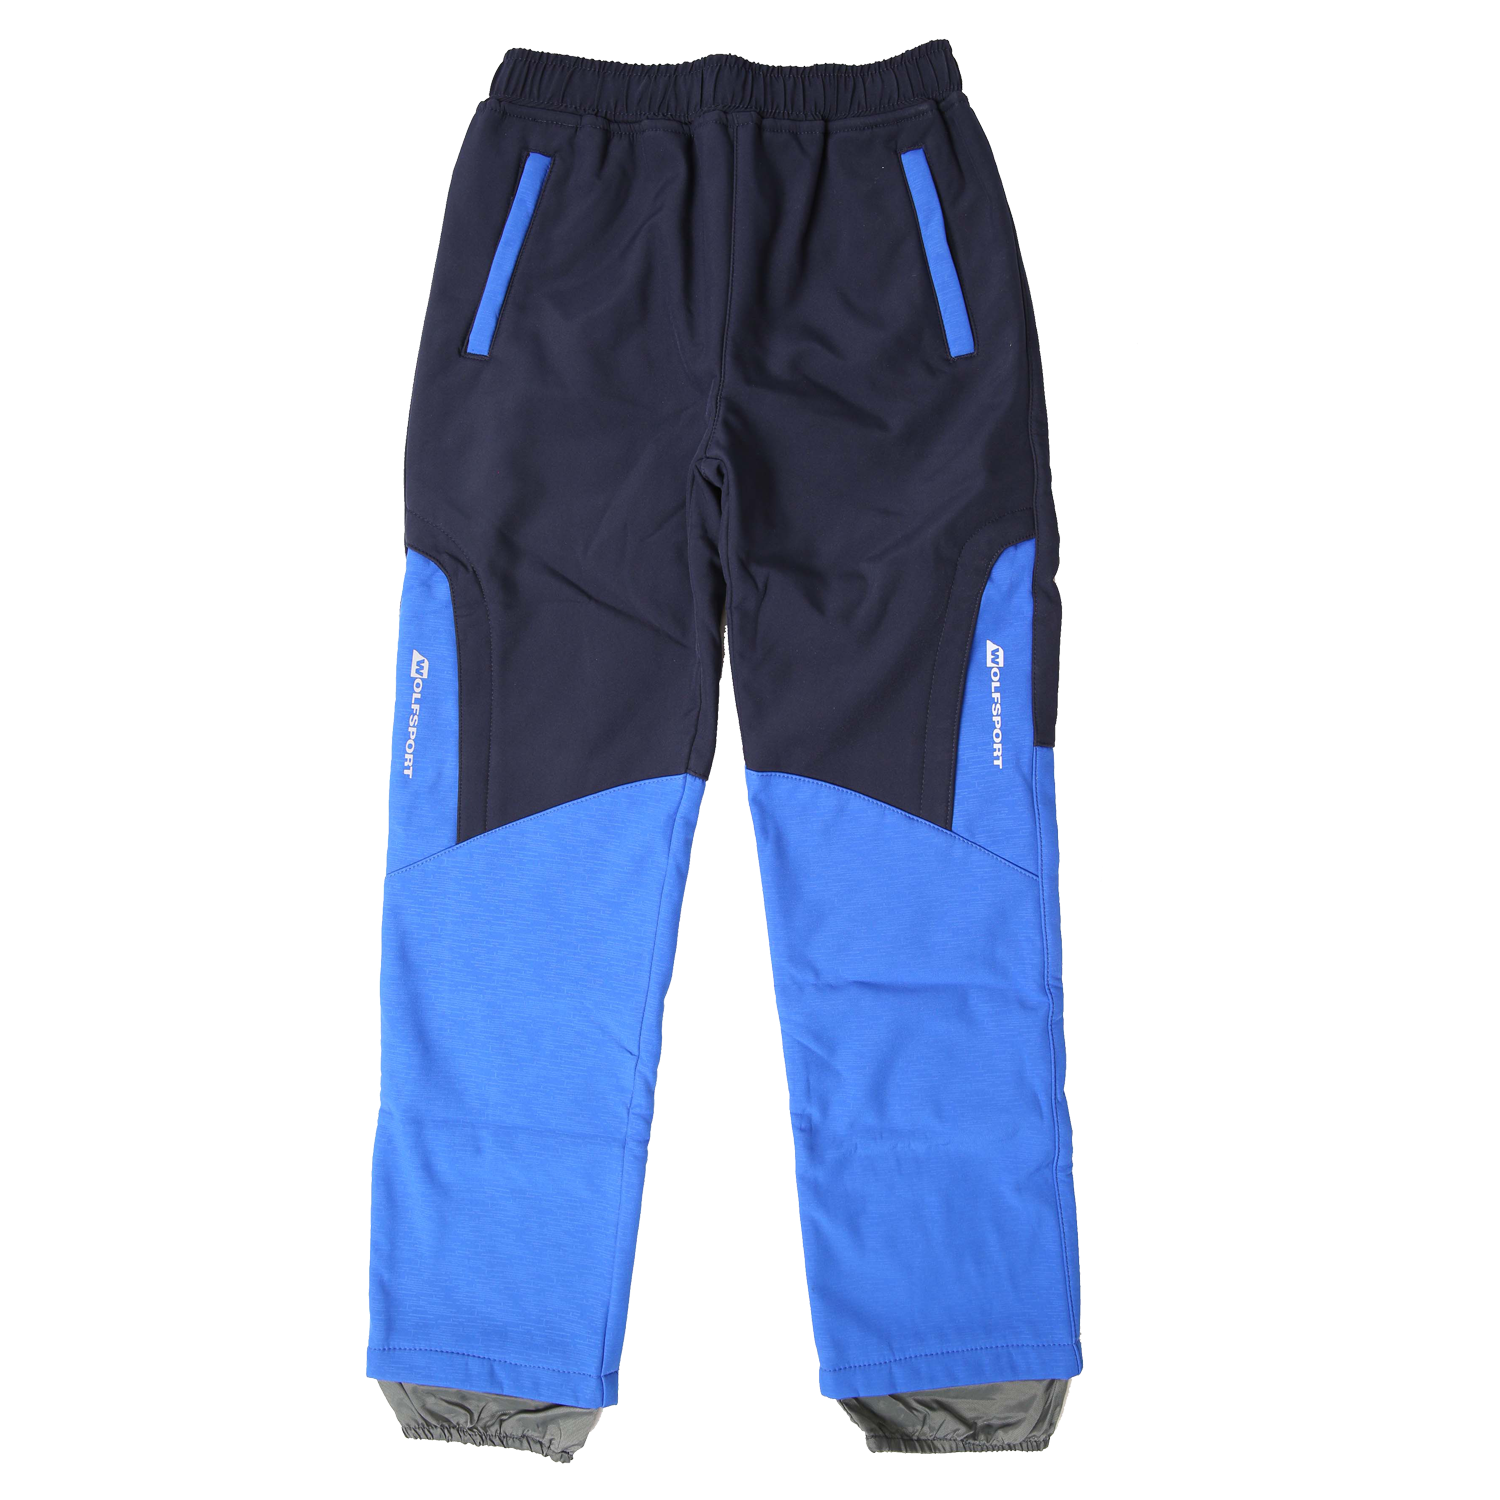 Chlapecké softshellové kalhoty, zateplené - Wolf B2195, tmavě modrá/modrá Barva: Modrá tmavě, Velikost: 110